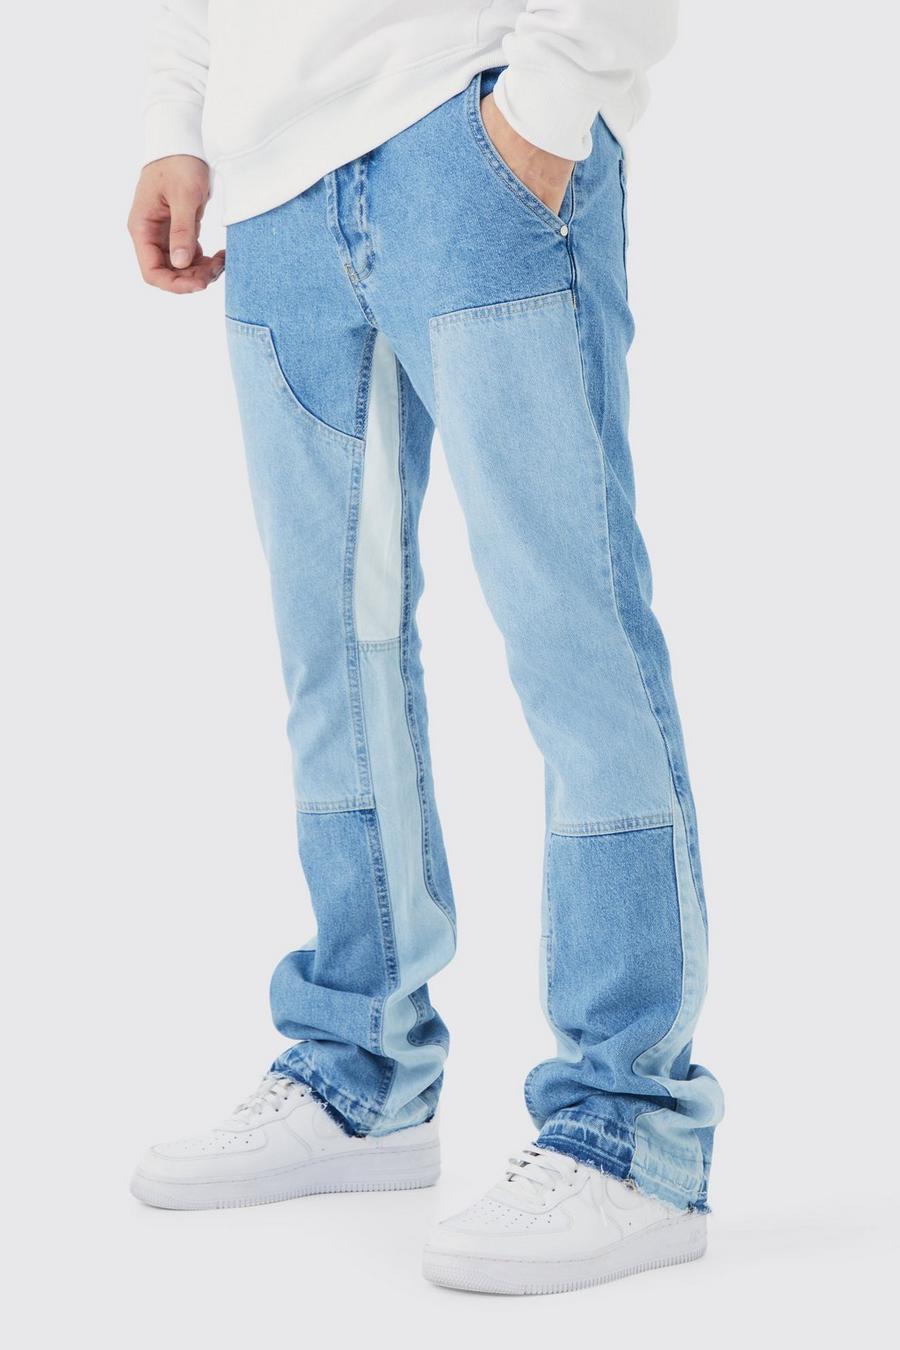 Jeans Tall Slim Fit in denim rigido a zampa con inserti stile Carpenter a contrasto, Light blue